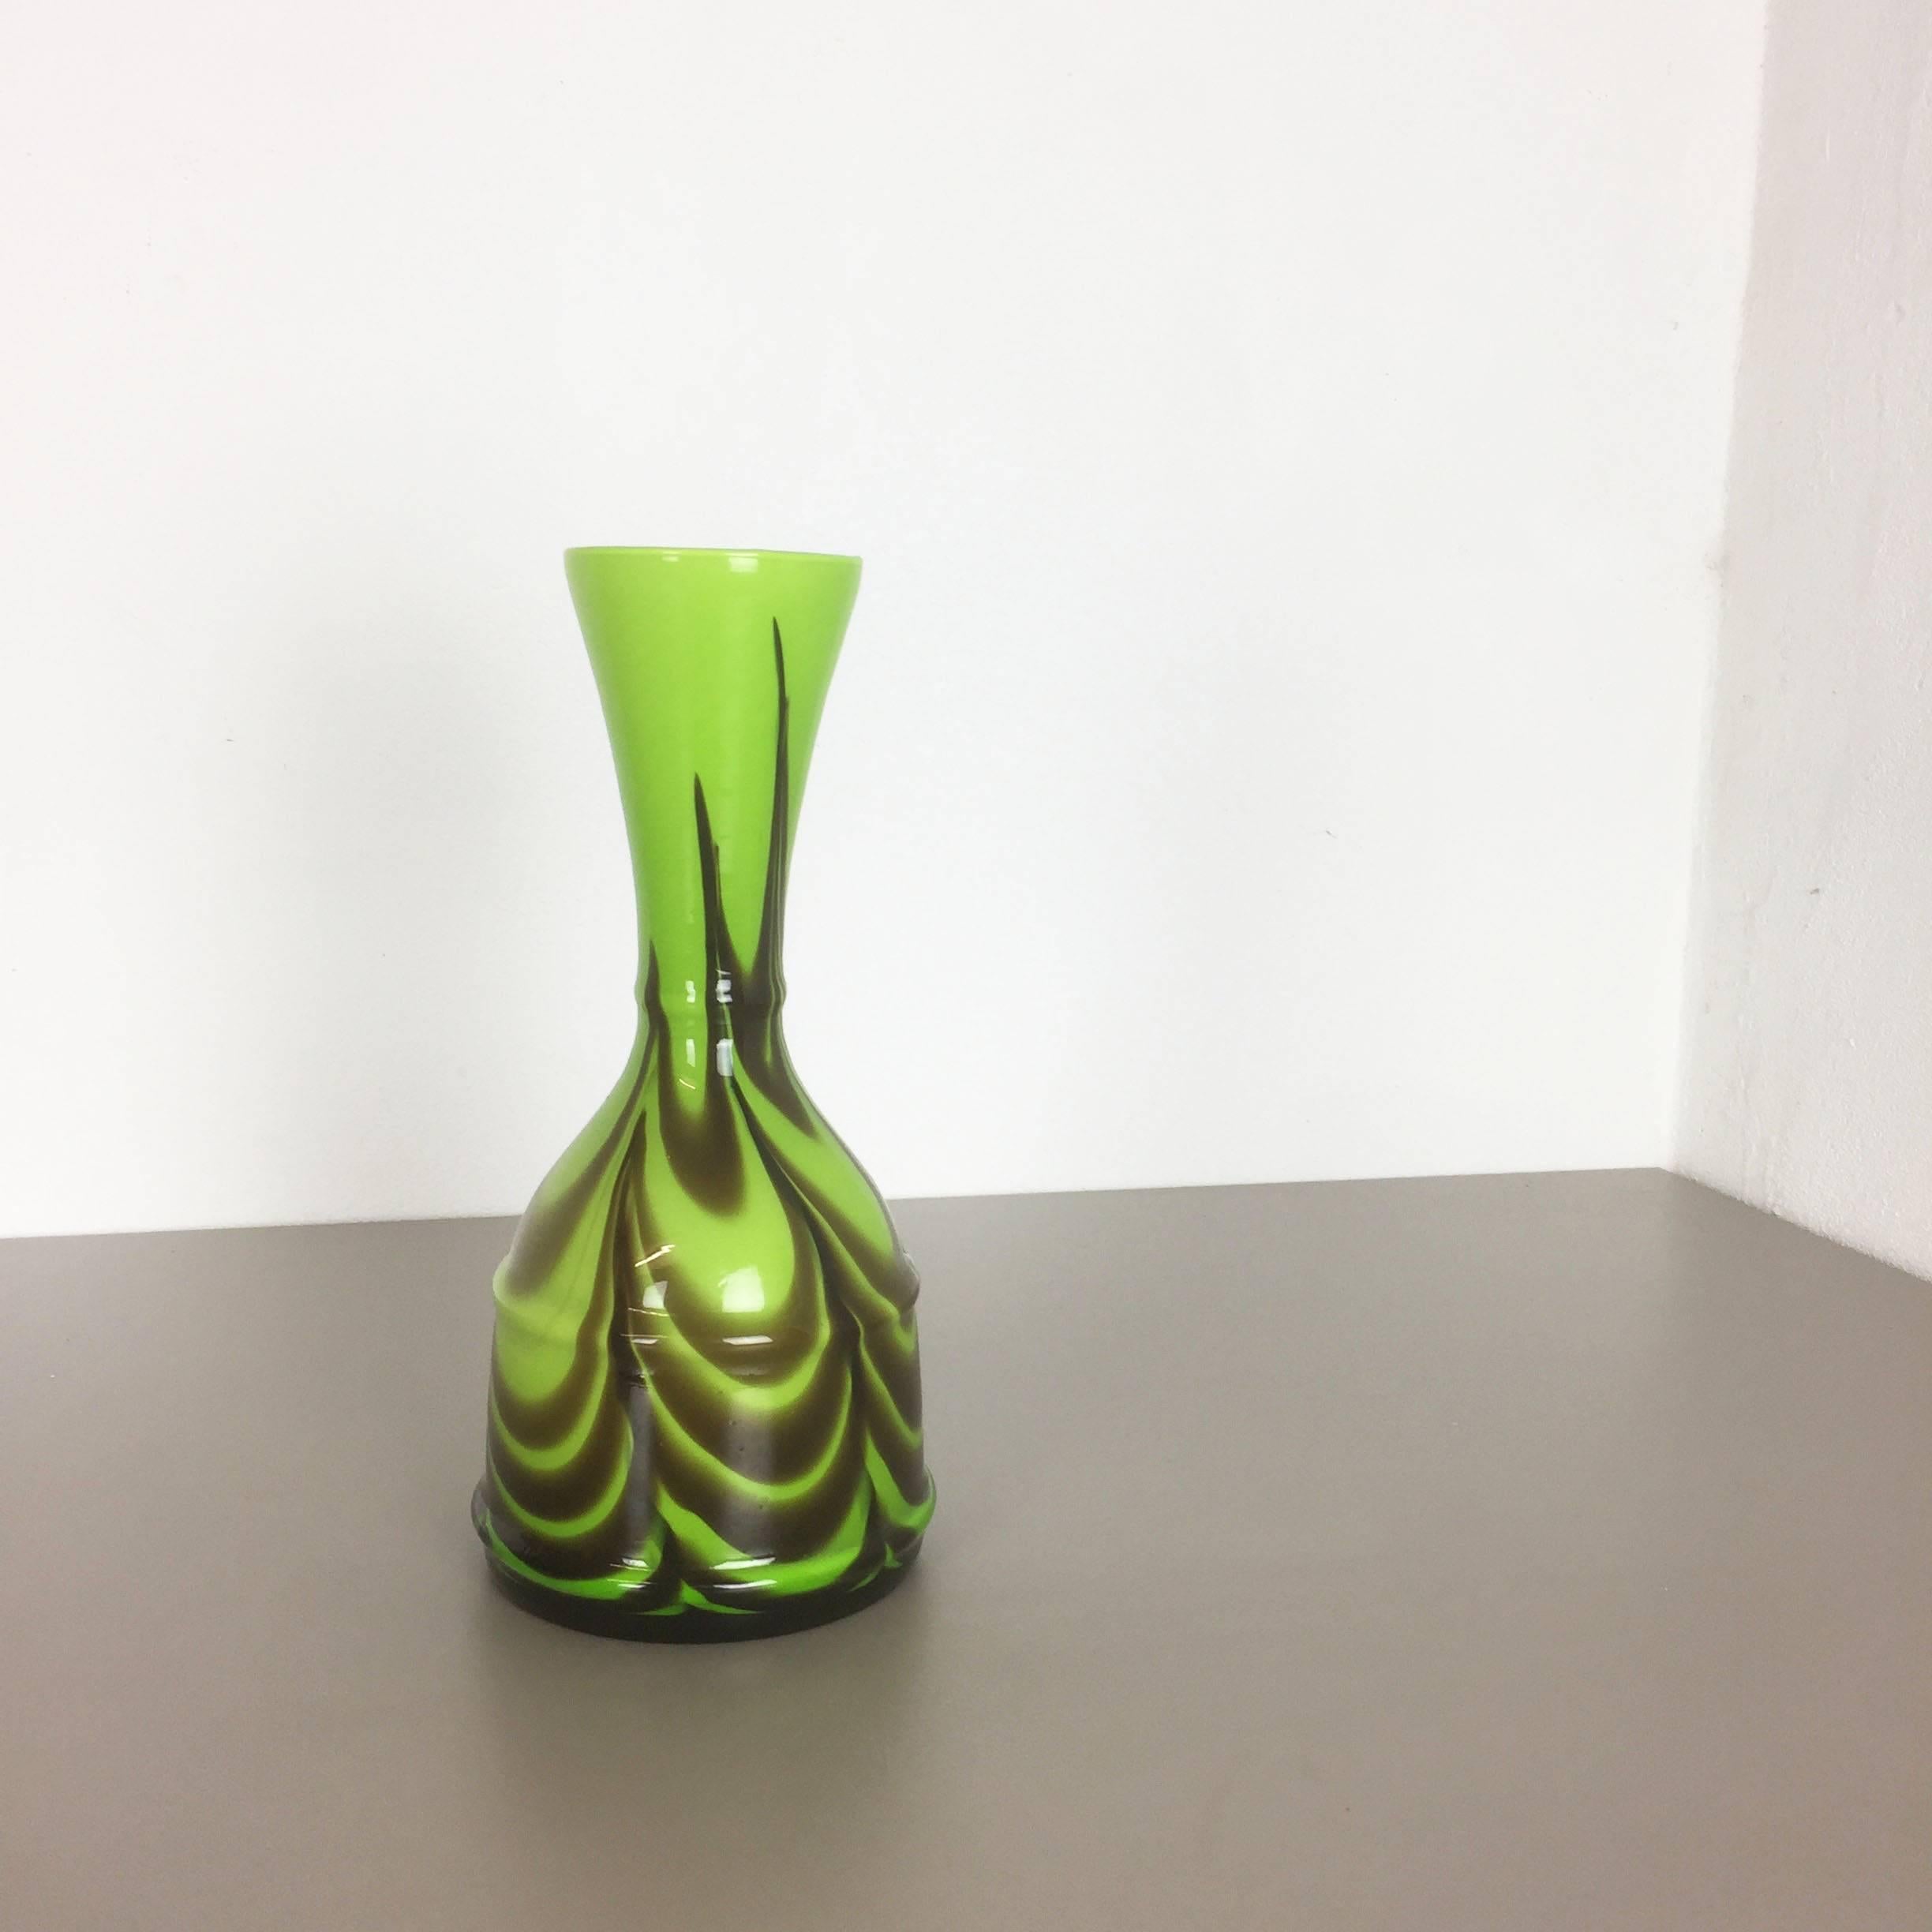 Artikel:

Pop-Art-Vase


Produzent:

Opalin Florenz


Design/One:

Carlo Moretti



Jahrzehnt:

1970s


Beschreibung:

Original Vintage 1970er Jahre Pop Art mundgeblasen Vase in Italien von Opaline Florenz gemacht. Diese Vase